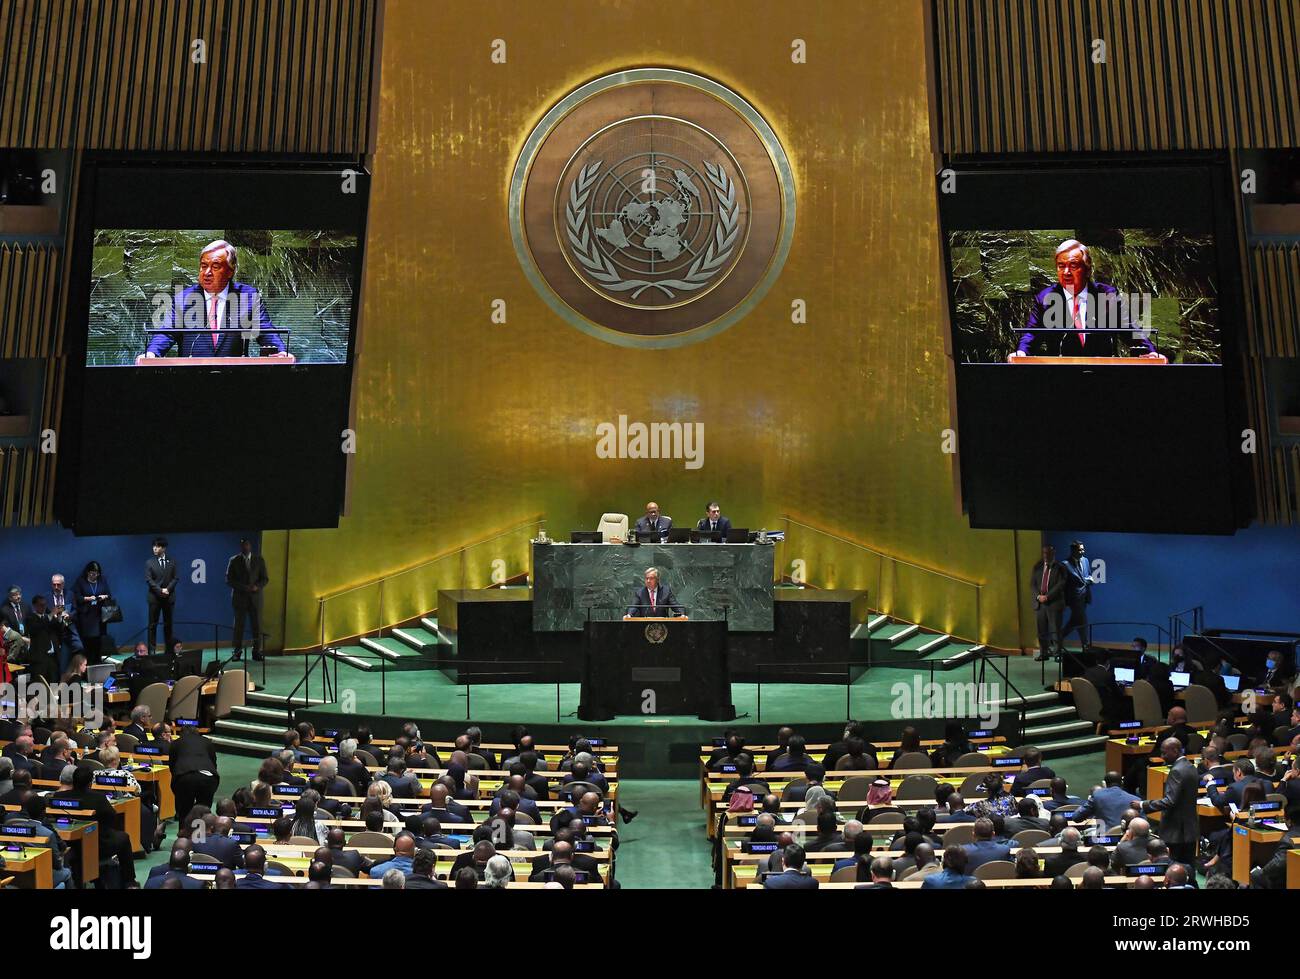 Vereinte Nationen. September 2023. UN-Generalsekretär Antonio Guterres (auf dem Podium und auf den Bildschirmen) spricht bei der Eröffnung der Generaldebatte der 78. Sitzung der UN-Generalversammlung am 19. September 2023 im Hauptquartier der Vereinten Nationen in New York. Die Generaldebatte der 78. Tagung der Generalversammlung der Vereinten Nationen wurde am Dienstag im Hauptquartier der Vereinten Nationen in New York eröffnet und konzentrierte sich auf die Wiederherstellung des globalen Vertrauens und der Solidarität in der gegenwärtigen schwierigen Zeit. Quelle: Li Rui/Xinhua/Alamy Live News Stockfoto